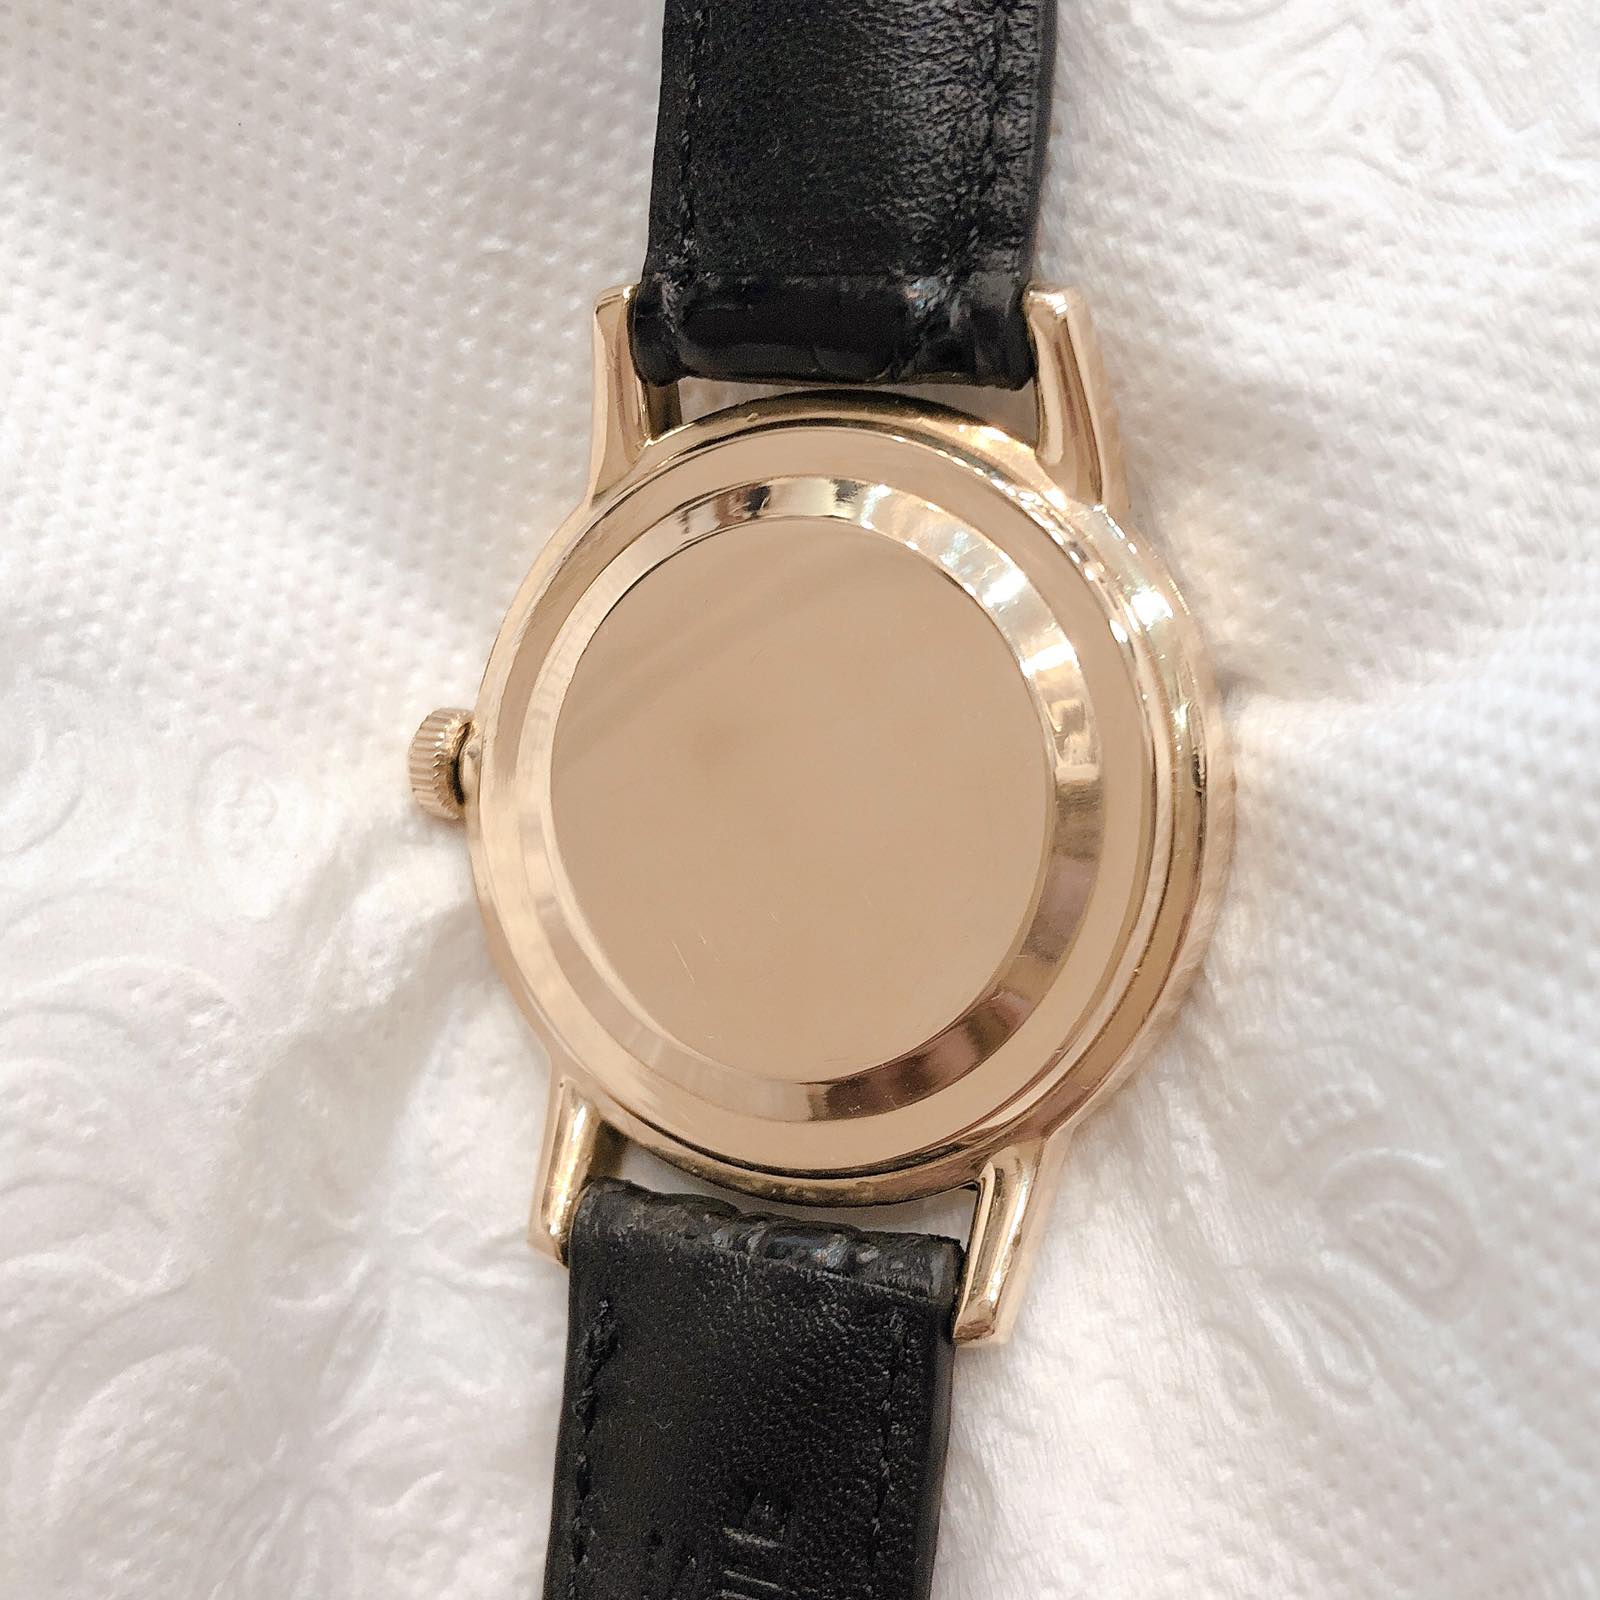 Đồng hồ cổ Seiko Lord Marvel kim đĩa đính hột xoàn lên dây 14k goldfilled chính hãng nhật bản